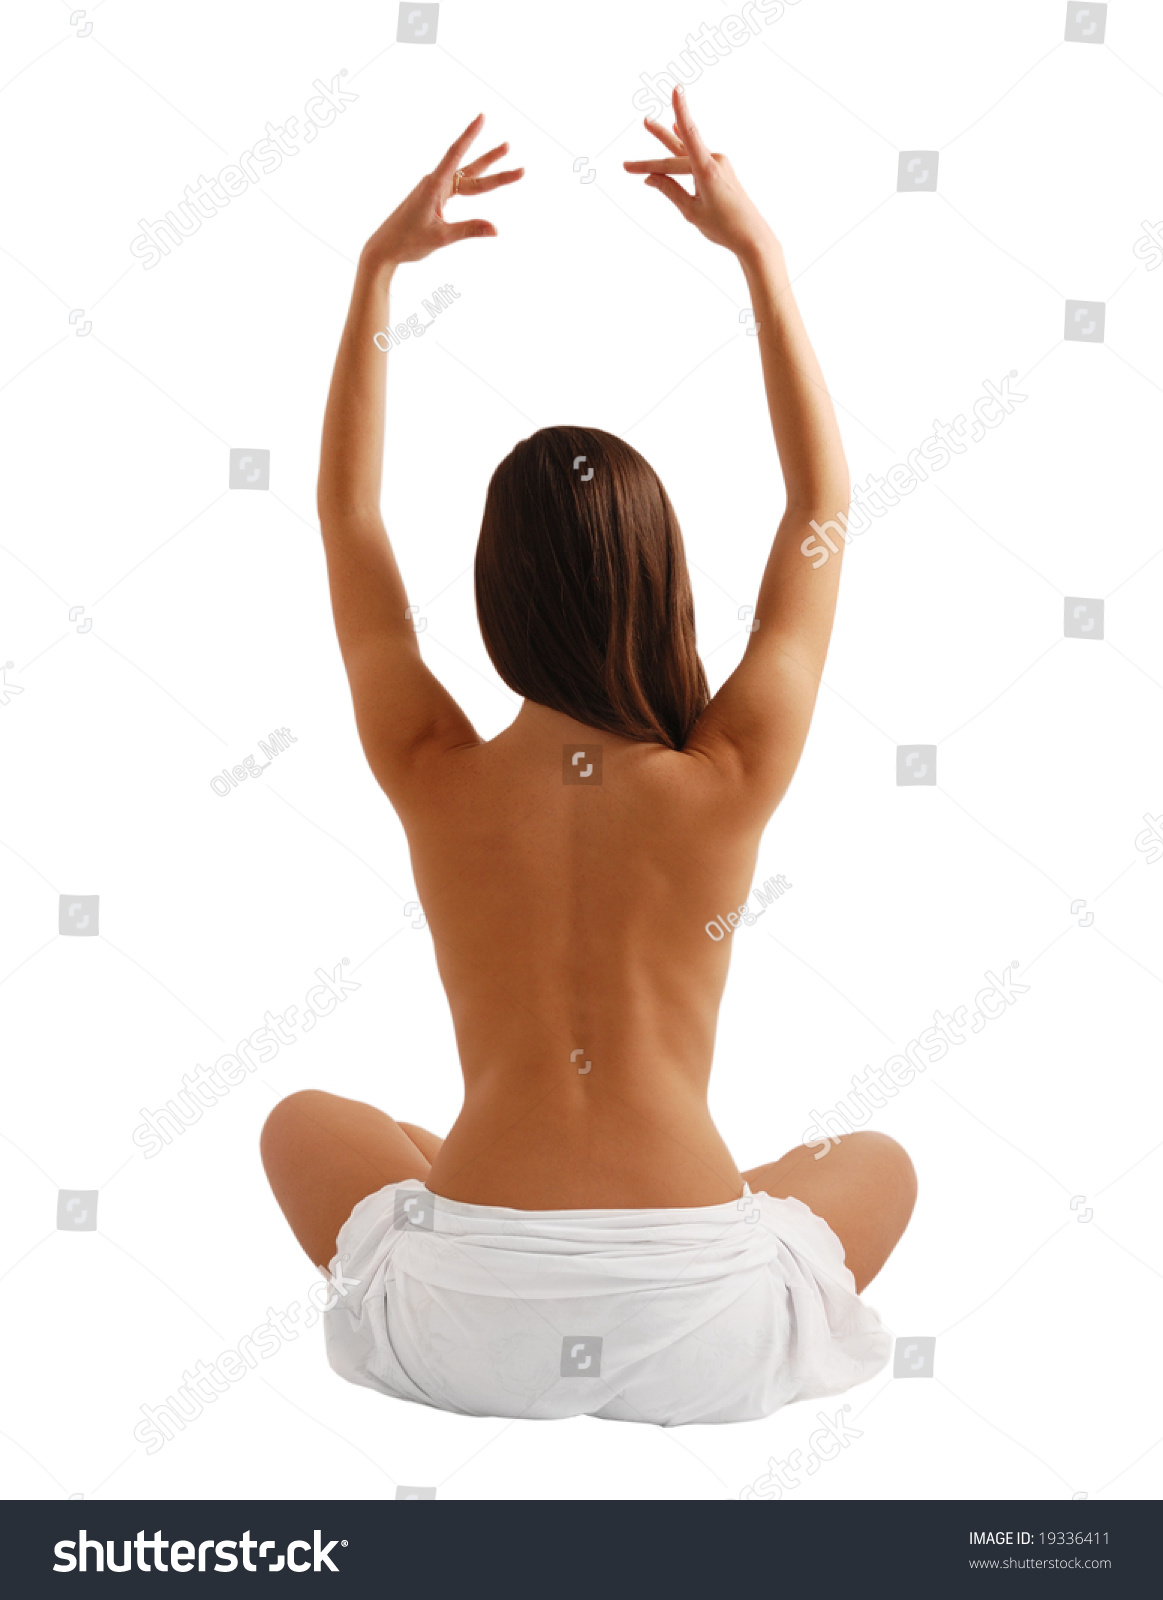 фото голая девушка с поднятой рукой фото 71